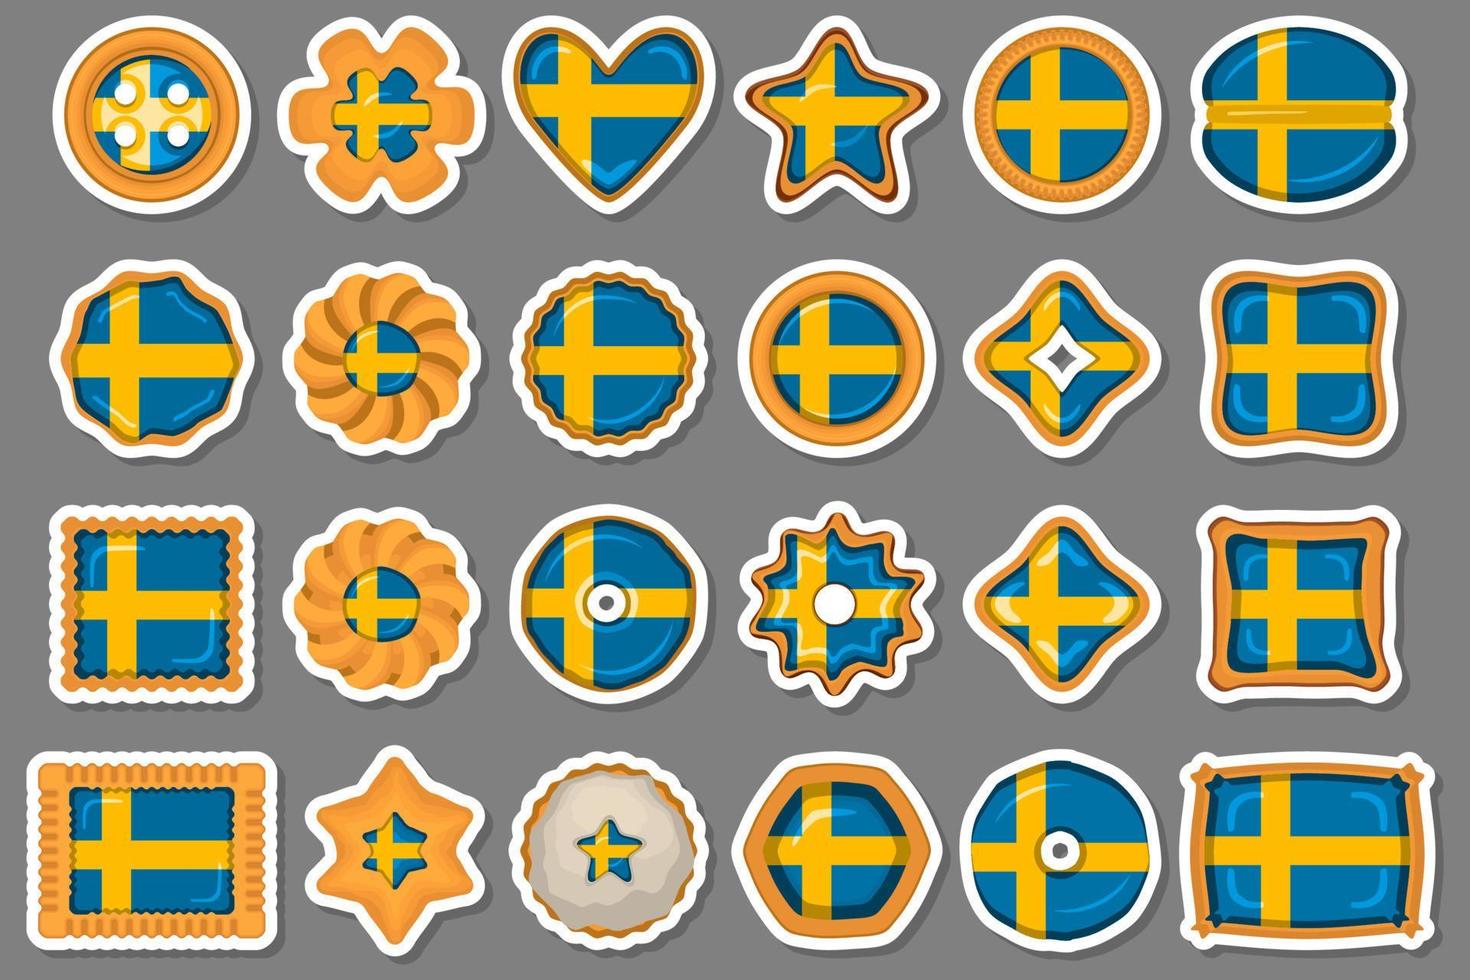 eigengemaakt koekje met vlag land Zweden in smakelijk biscuit vector